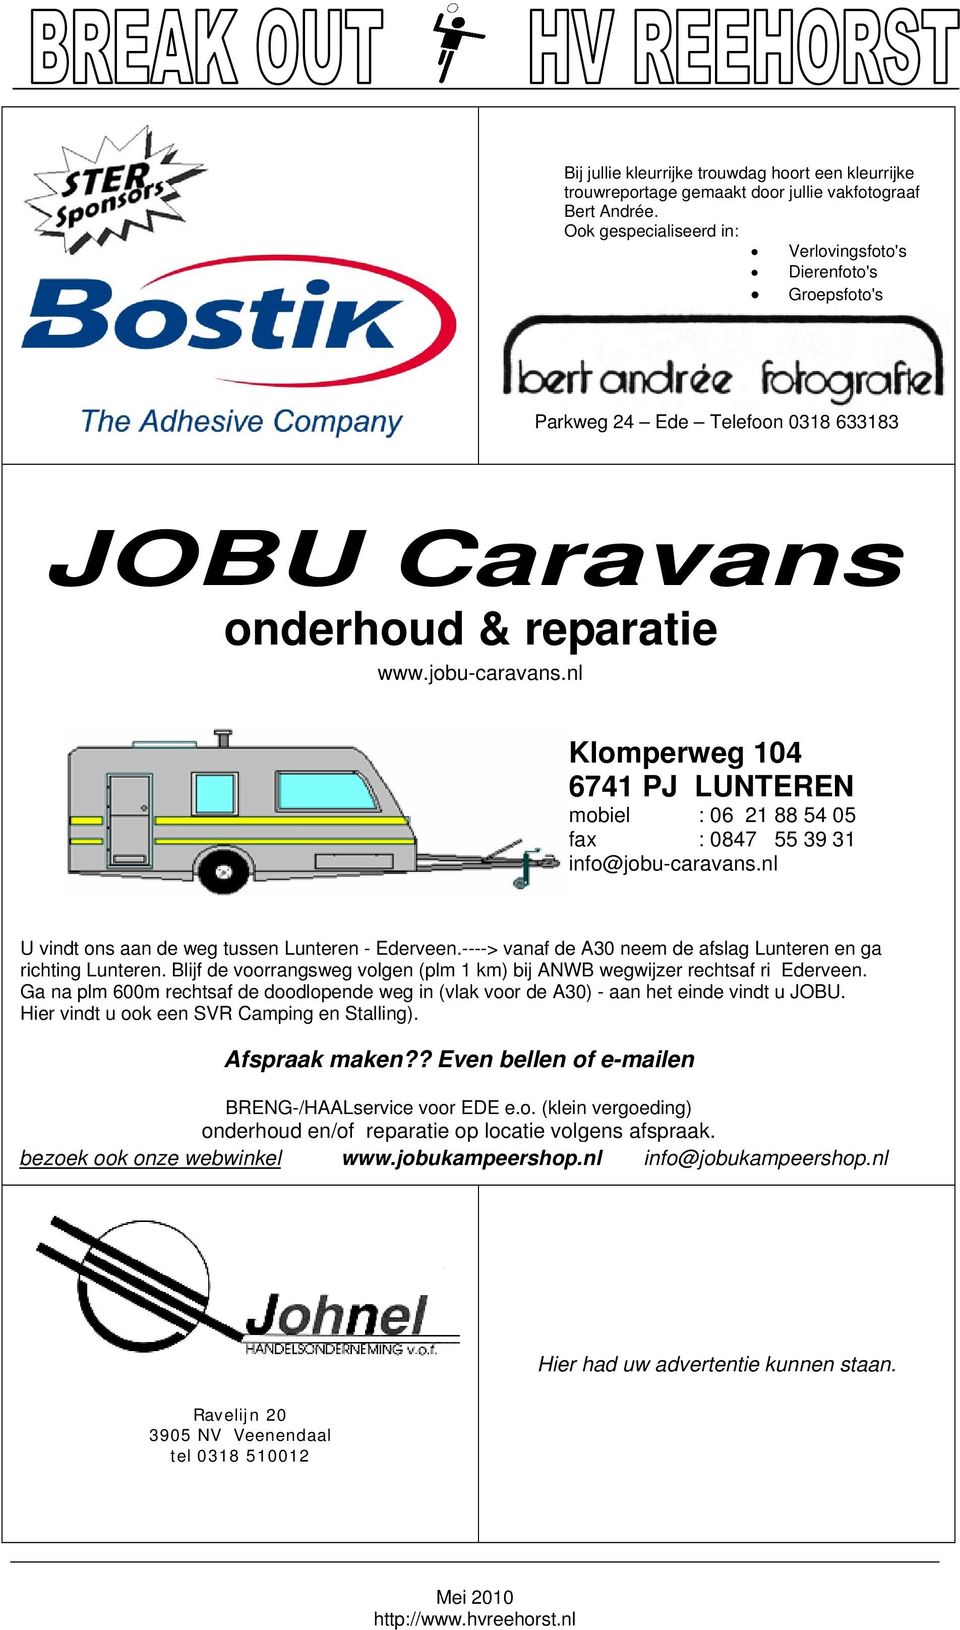 nl onderhoud & reparatie www.jobu-caravans.nl Klomperweg 104 6741 PJ LUNTEREN mobiel : 06 21 88 54 05 fax : 0847 55 39 31 info@jobu-caravans.nl U vindt ons aan de weg tussen Lunteren - Ederveen.